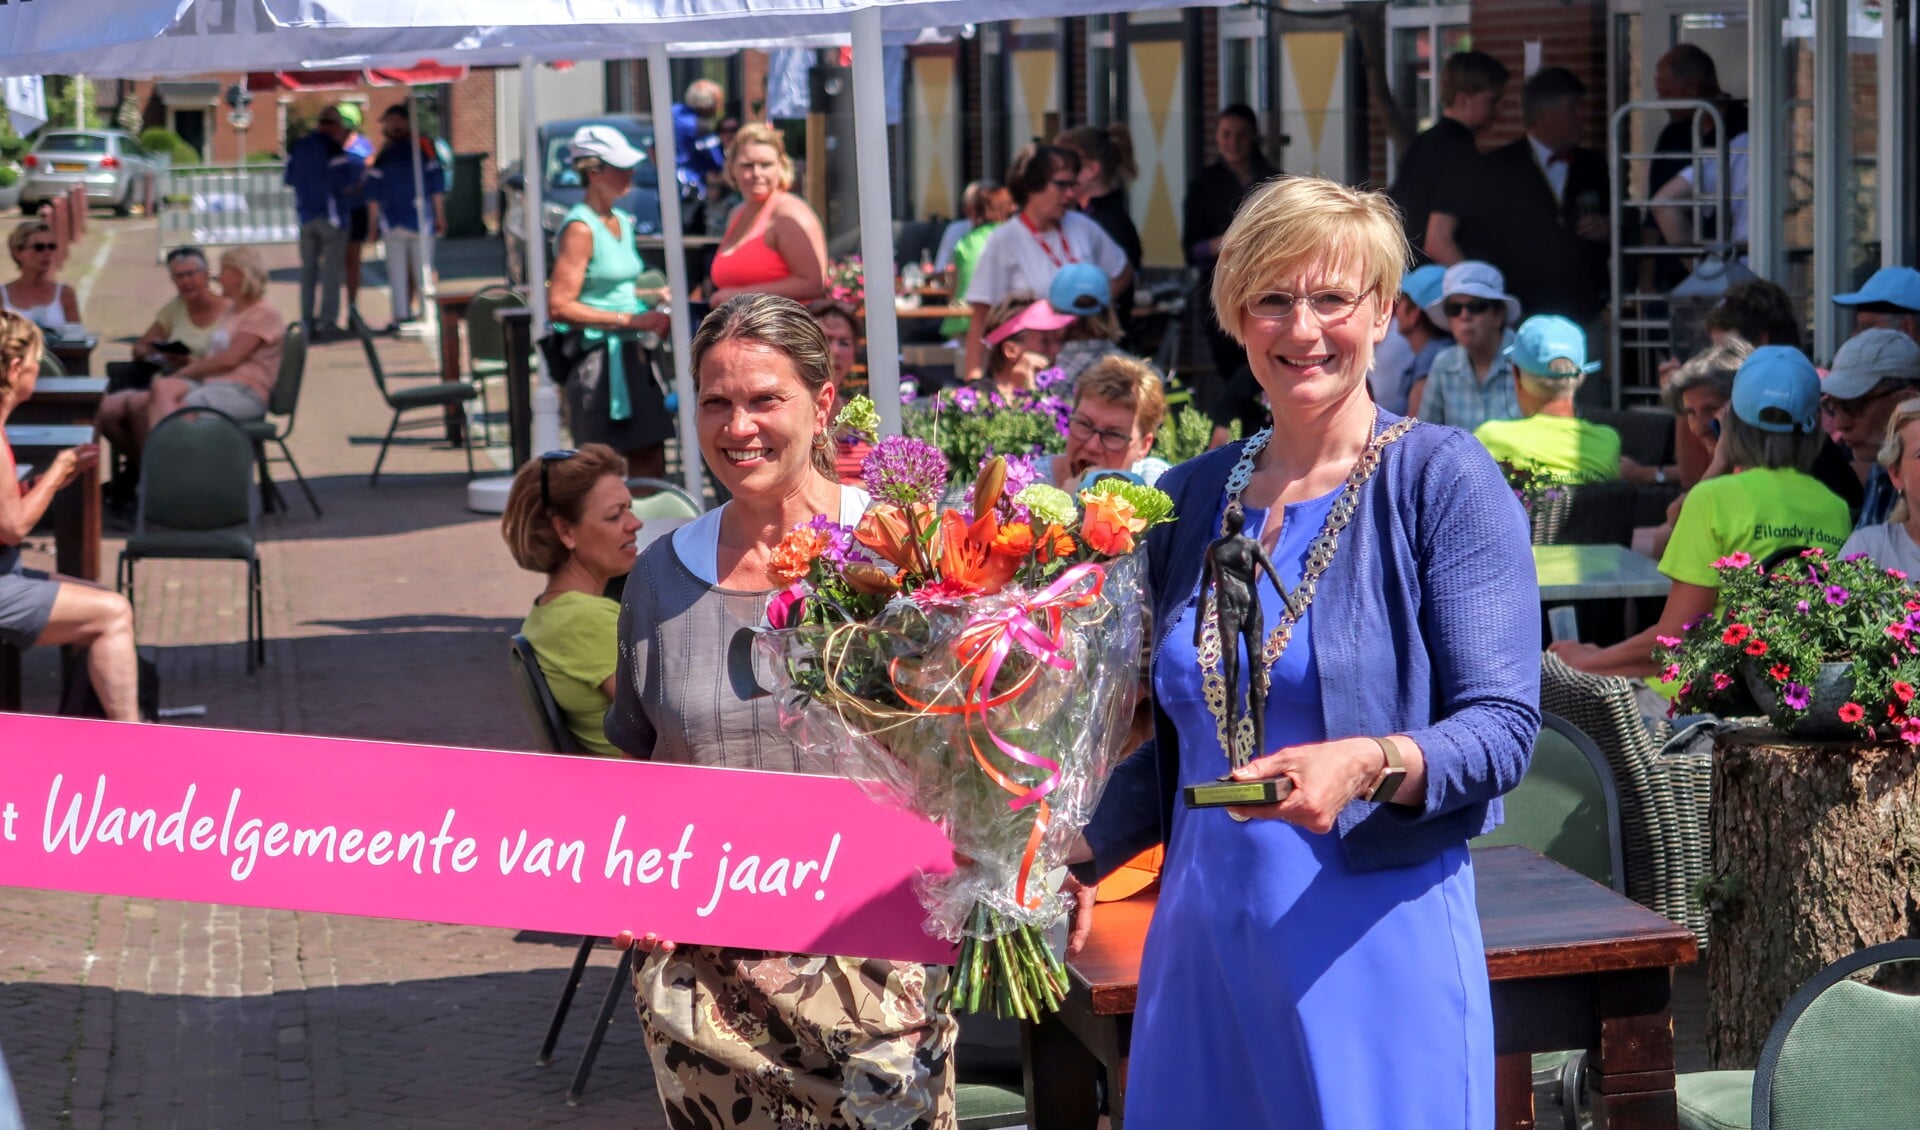 Burgemeester Marianne Besselink toont het beeldje dat hoort bij de titel Wandelgemeente van het jaar 2018. Foto: Luuk Stam 